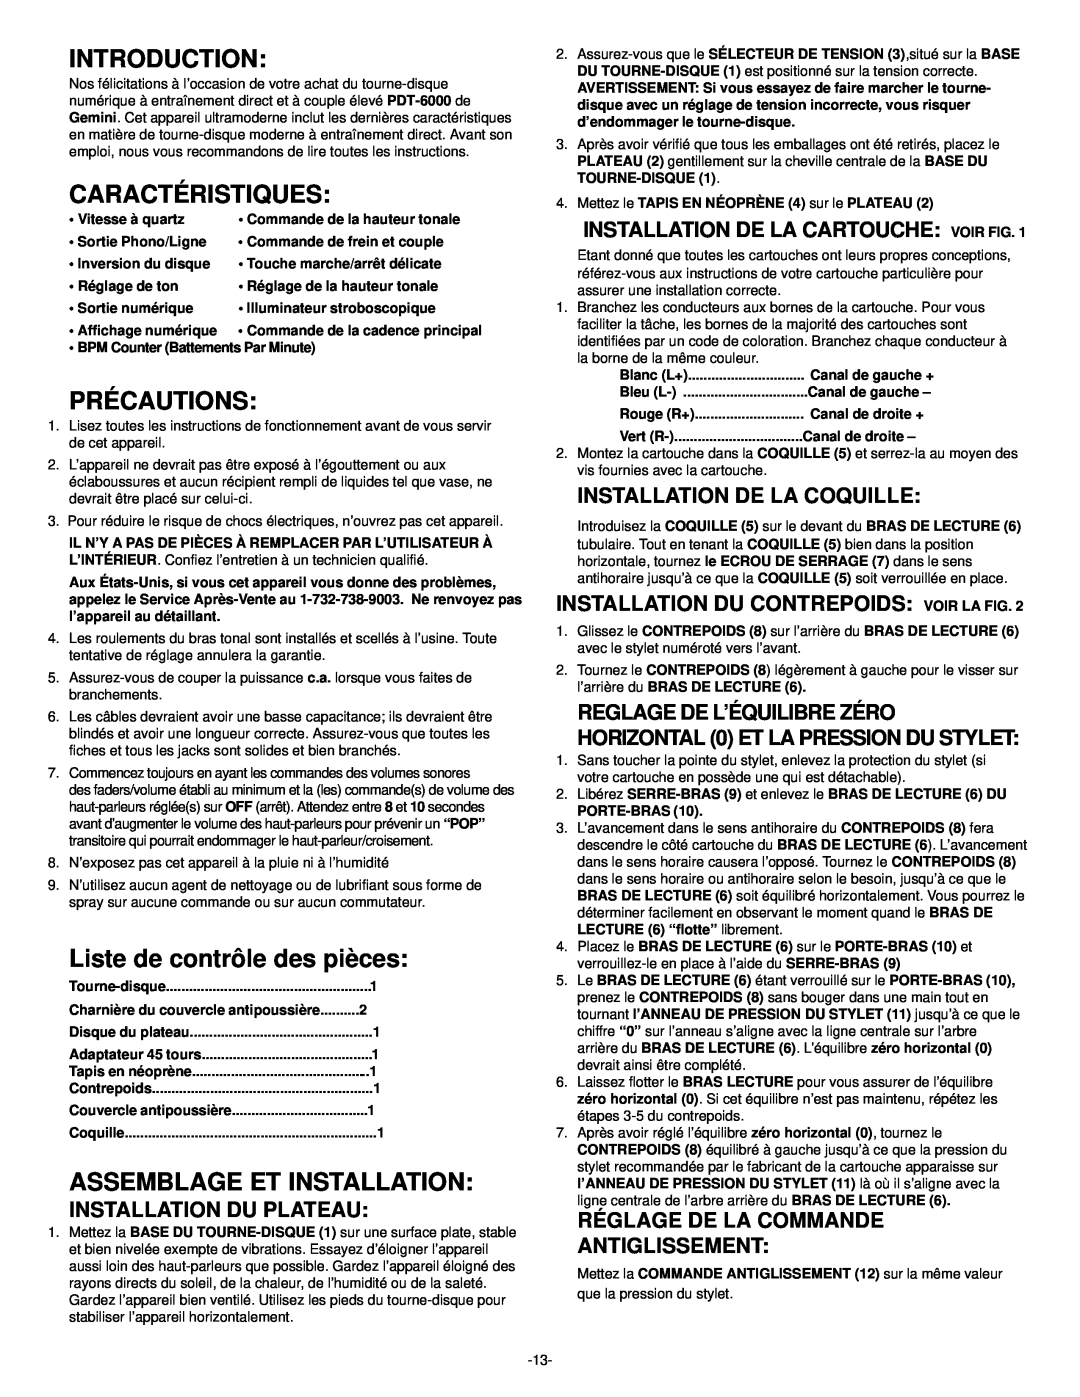 Gemini PDT-6000 Caractéristiques, Précautions, Liste de contrôle des pièces, Assemblage Et Installation, Introduction 